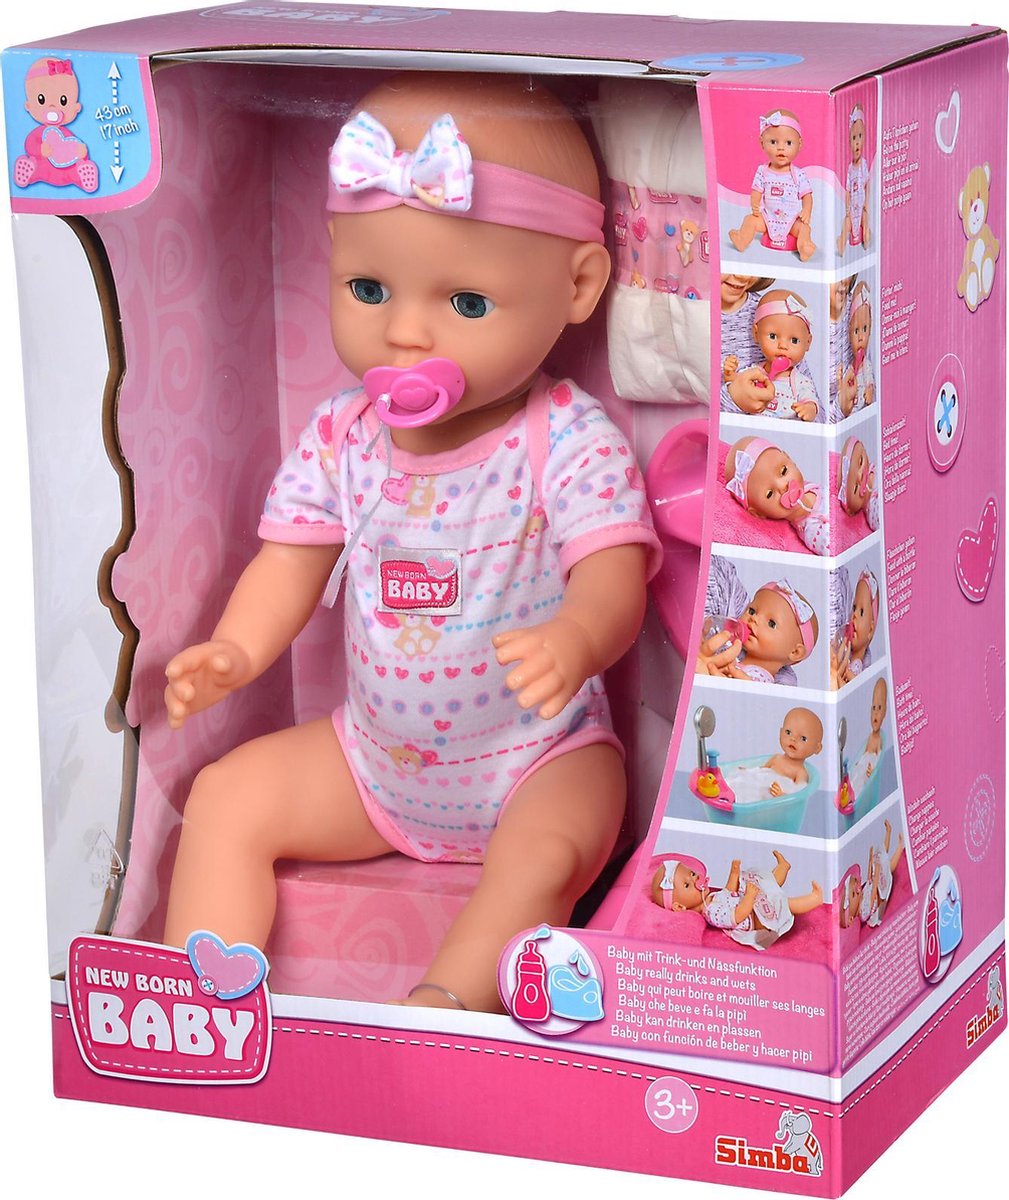 biografie Heel boos Klooster Simba - New Born Baby - Babypop - 43 cm - slapende ogen - roze - drink en  plasfunctie... | bol.com